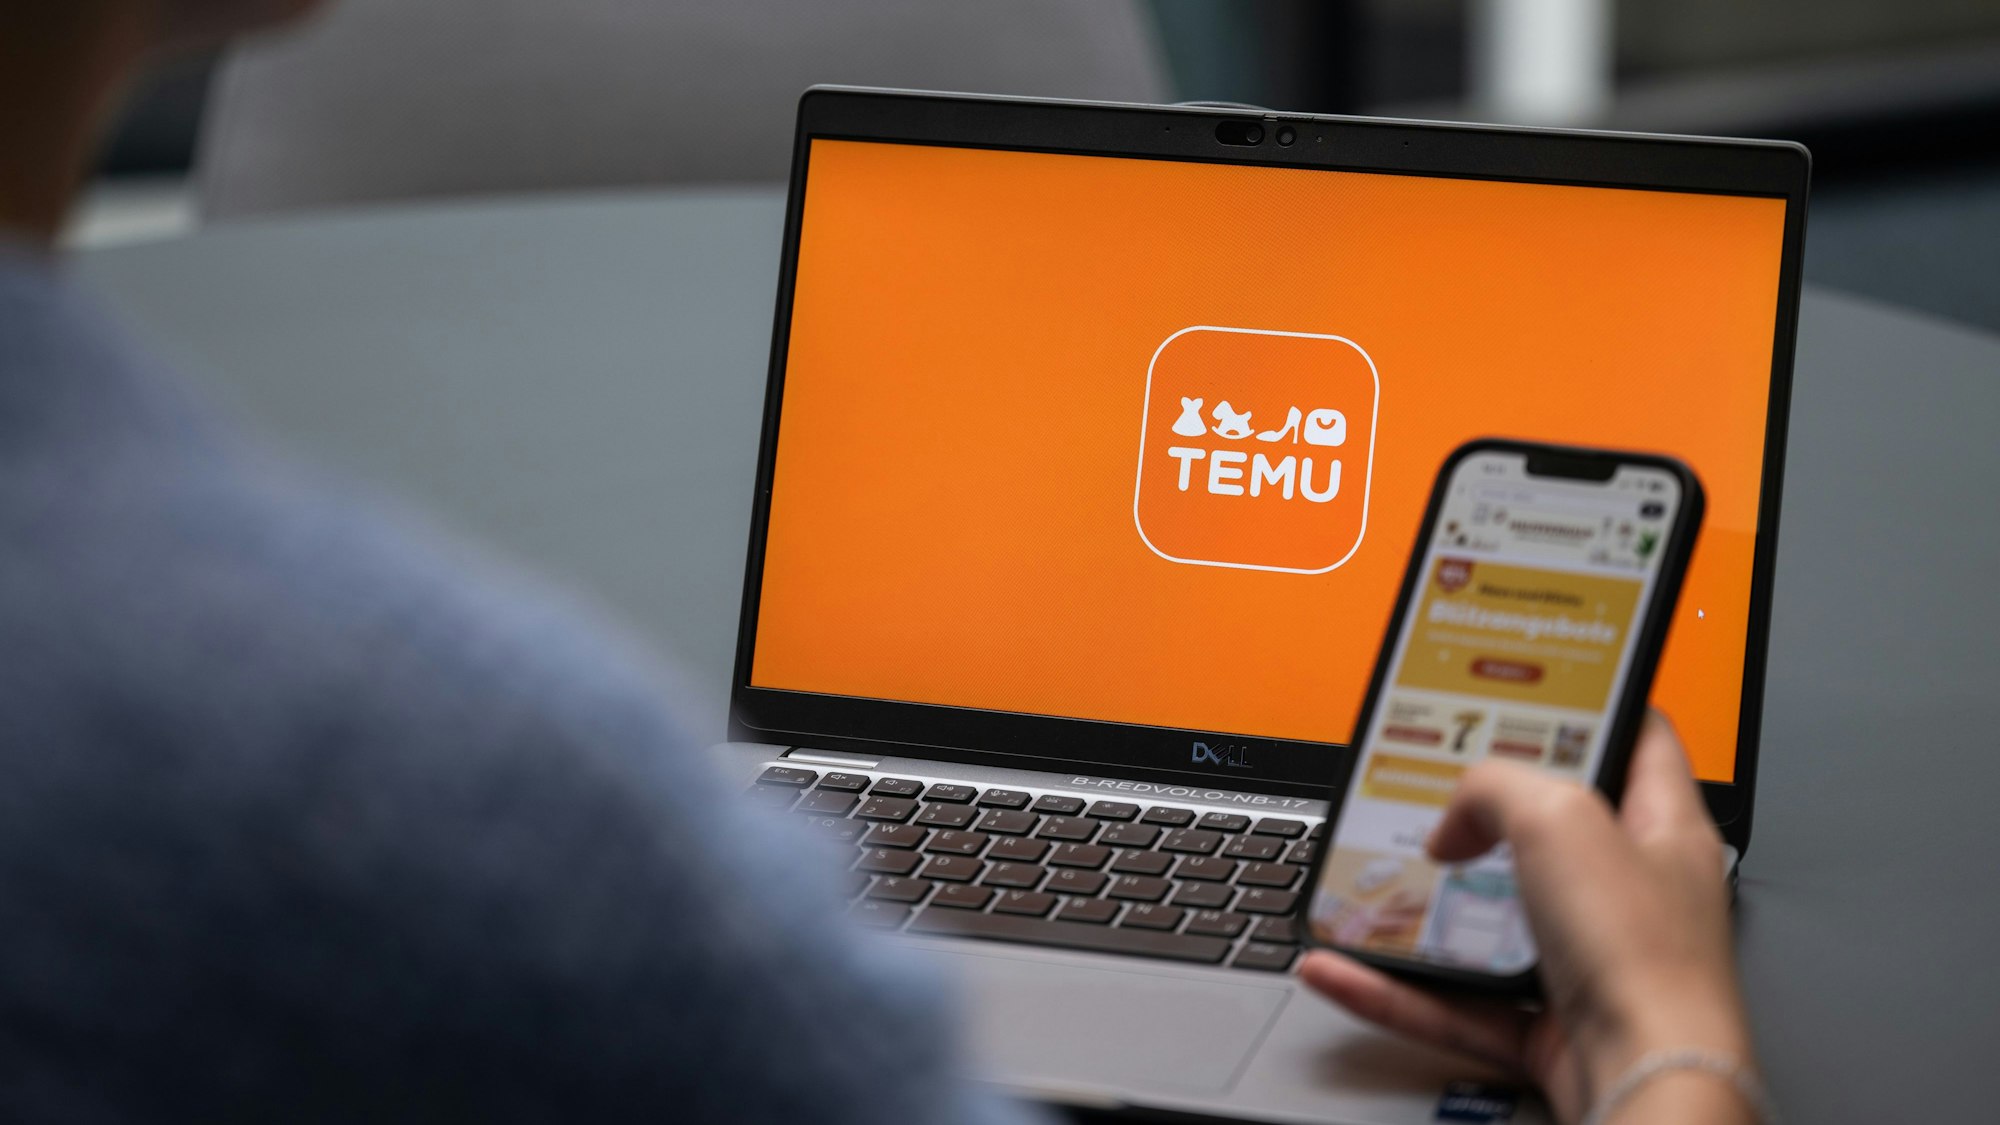 Blick auf einen Laptop mit dem Logo der App Temu (gestellte Szene).